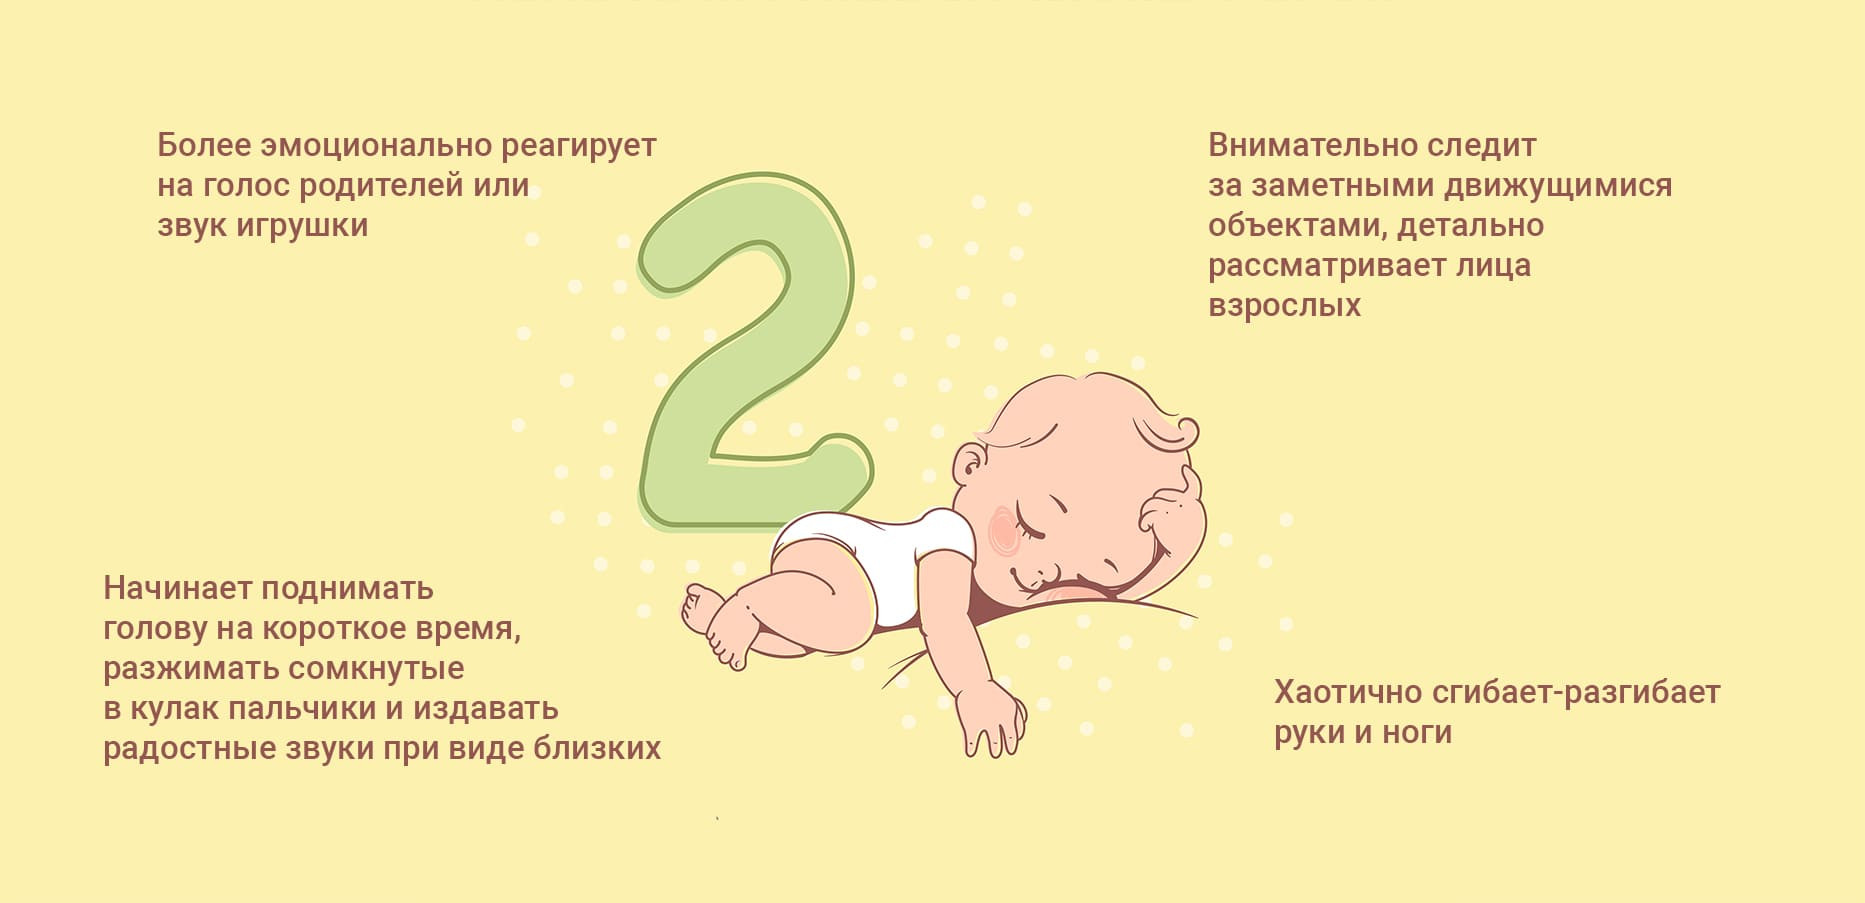 Полезная информация о шестимесячном малыше